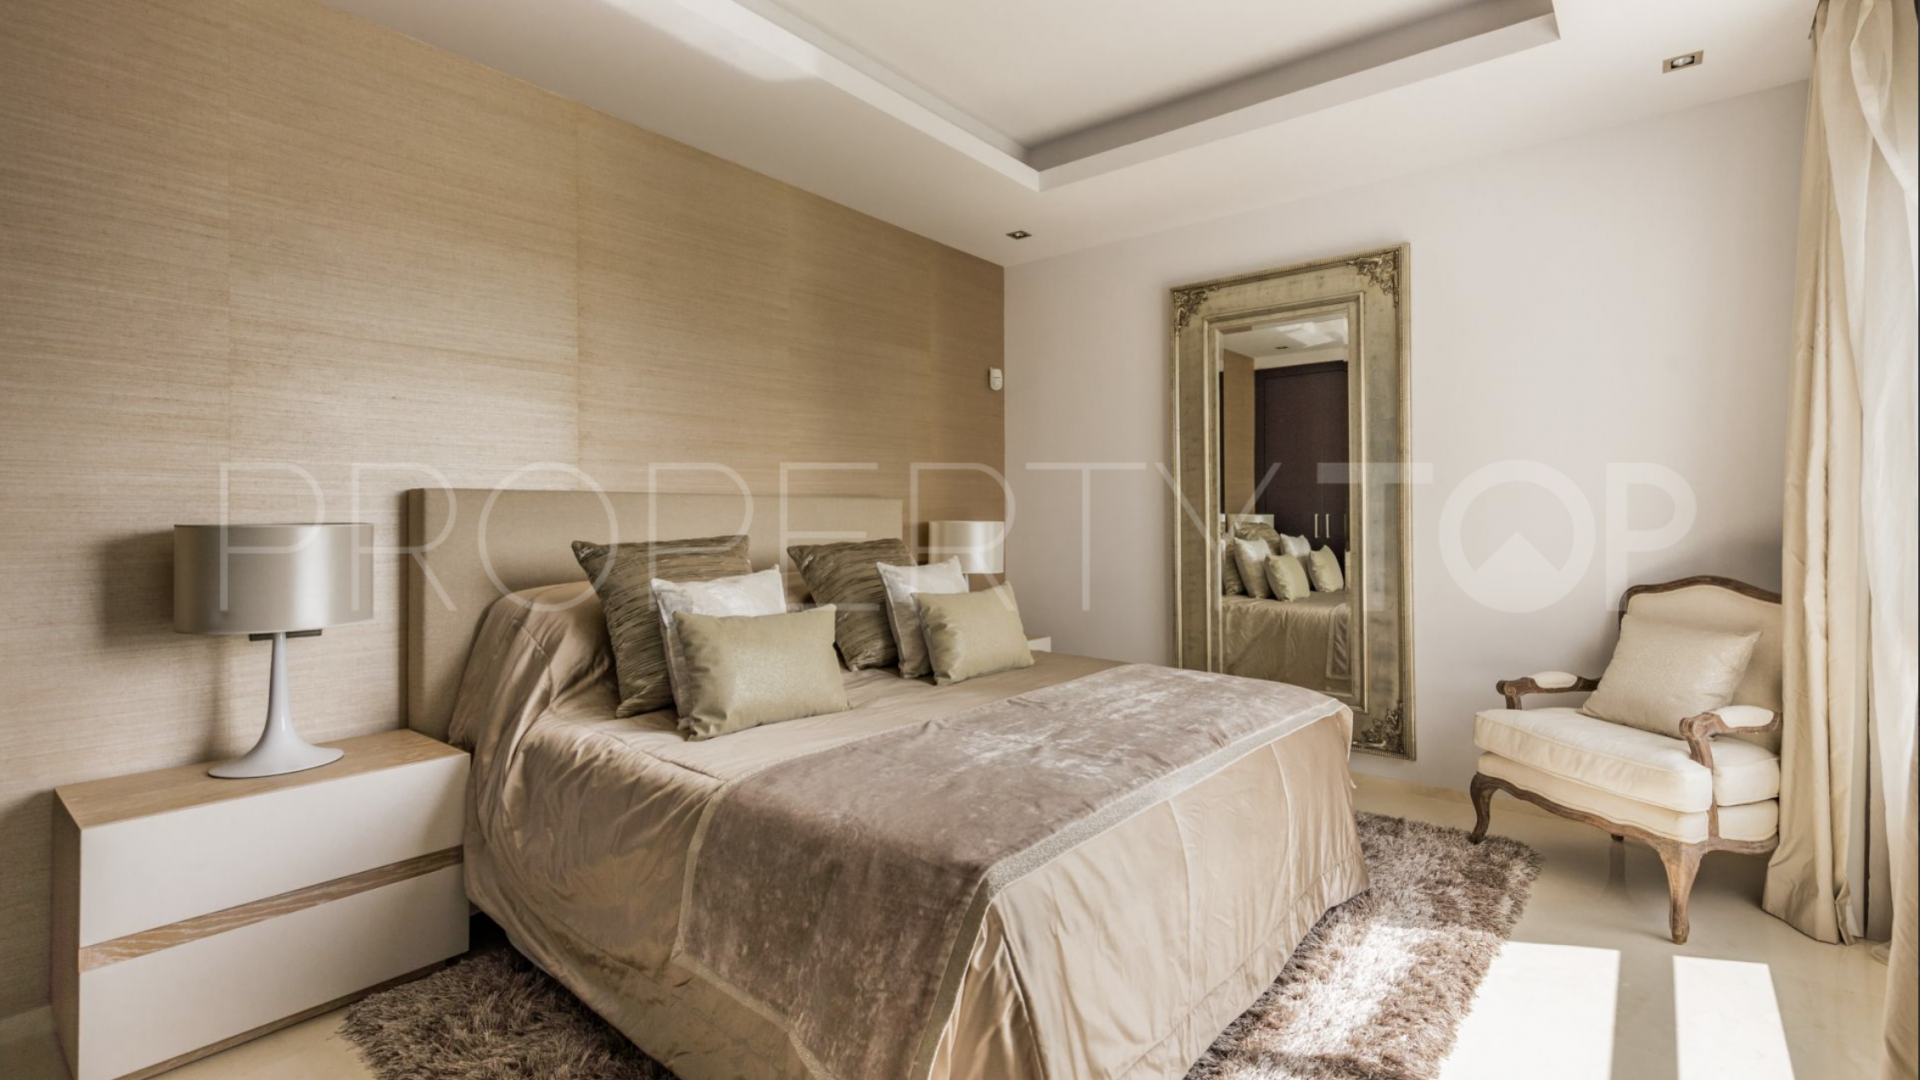 5 bedrooms Altos de Puente Romano villa for sale